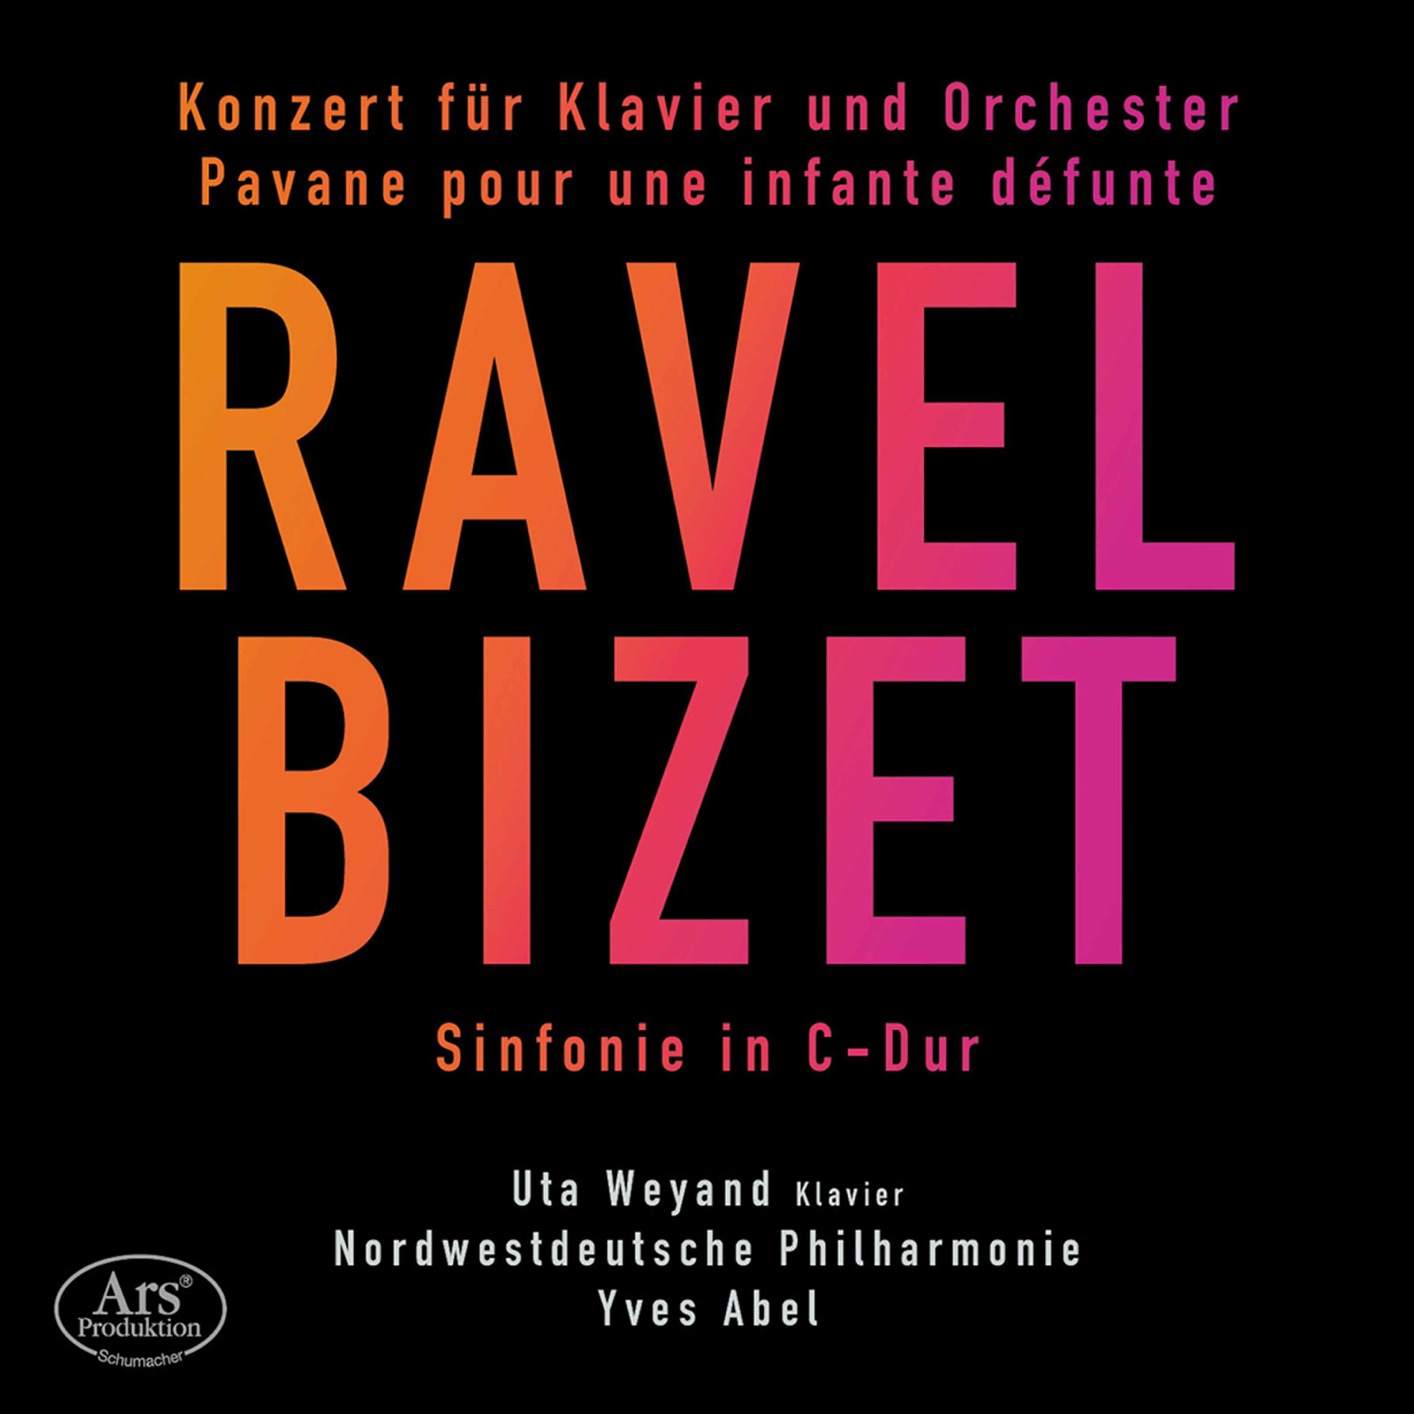 Uta Weyand, Nordwestdeutsche Philharmonie & Yves Abel - Ravel & Bizet - Orchestral Works (2021) [FLAC 24bit/48kHz]